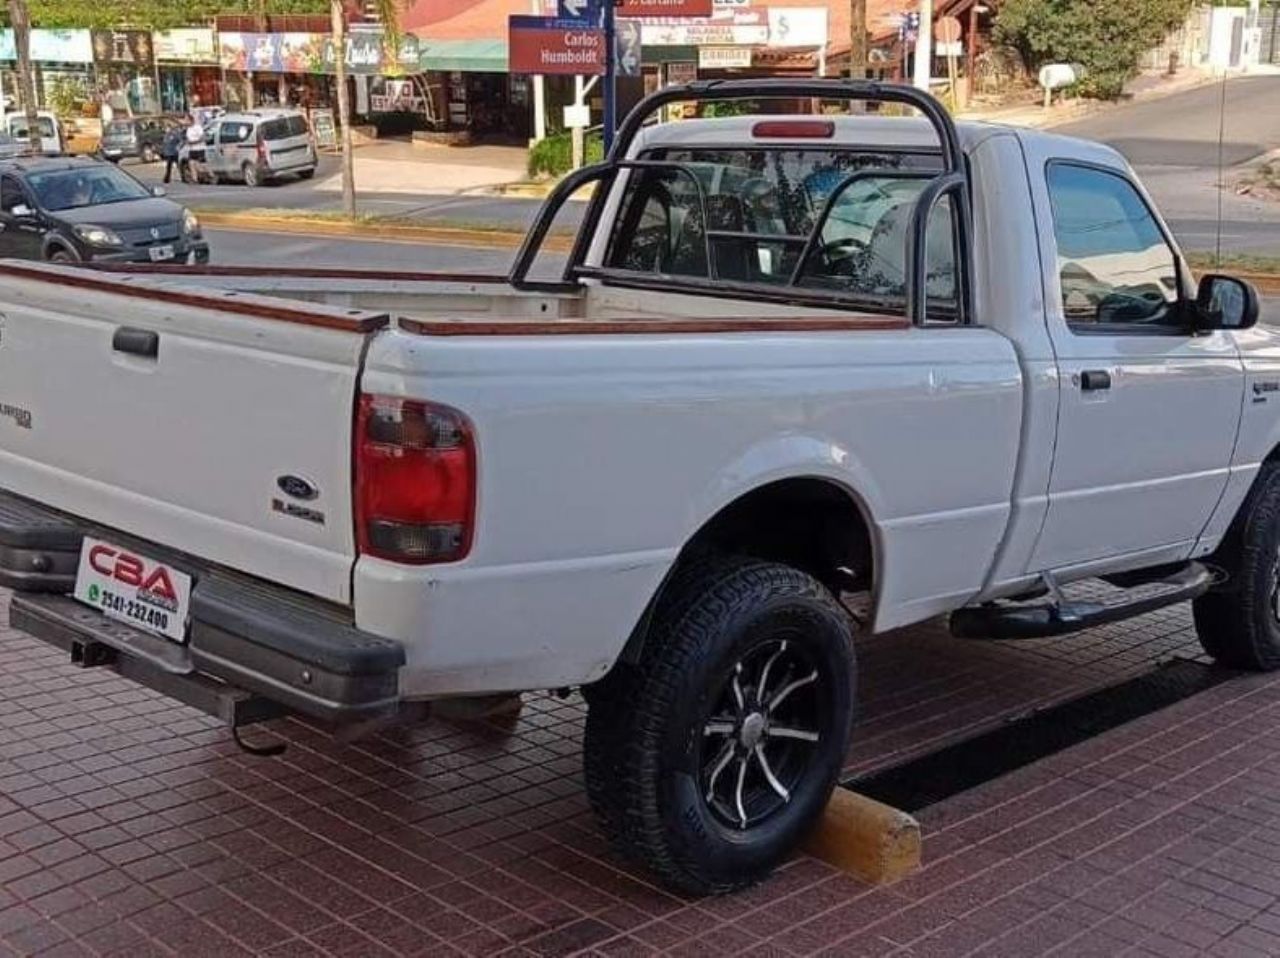 Ford Ranger Usada en Córdoba, deRuedas